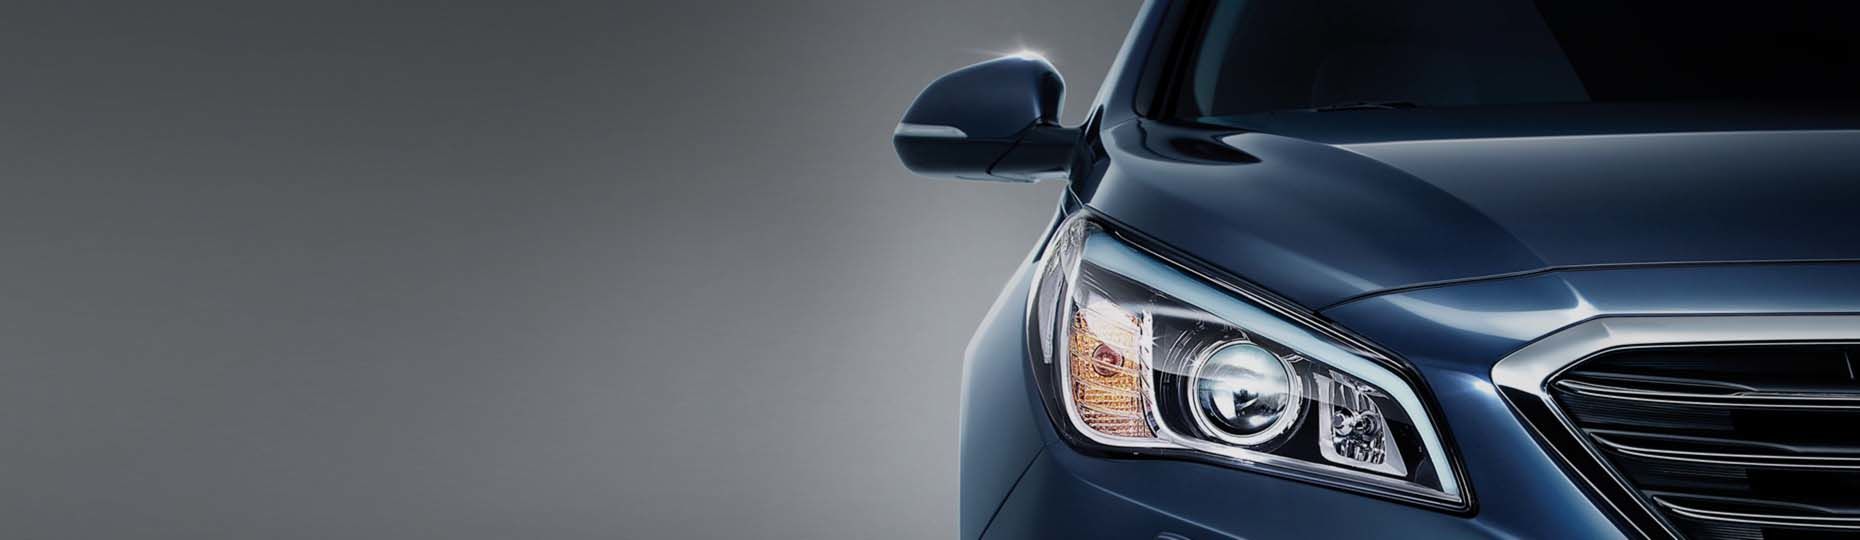 Hyundai автомобилінің алдыңғы жағынан логотипі мен торына үлкейтілген көрініс